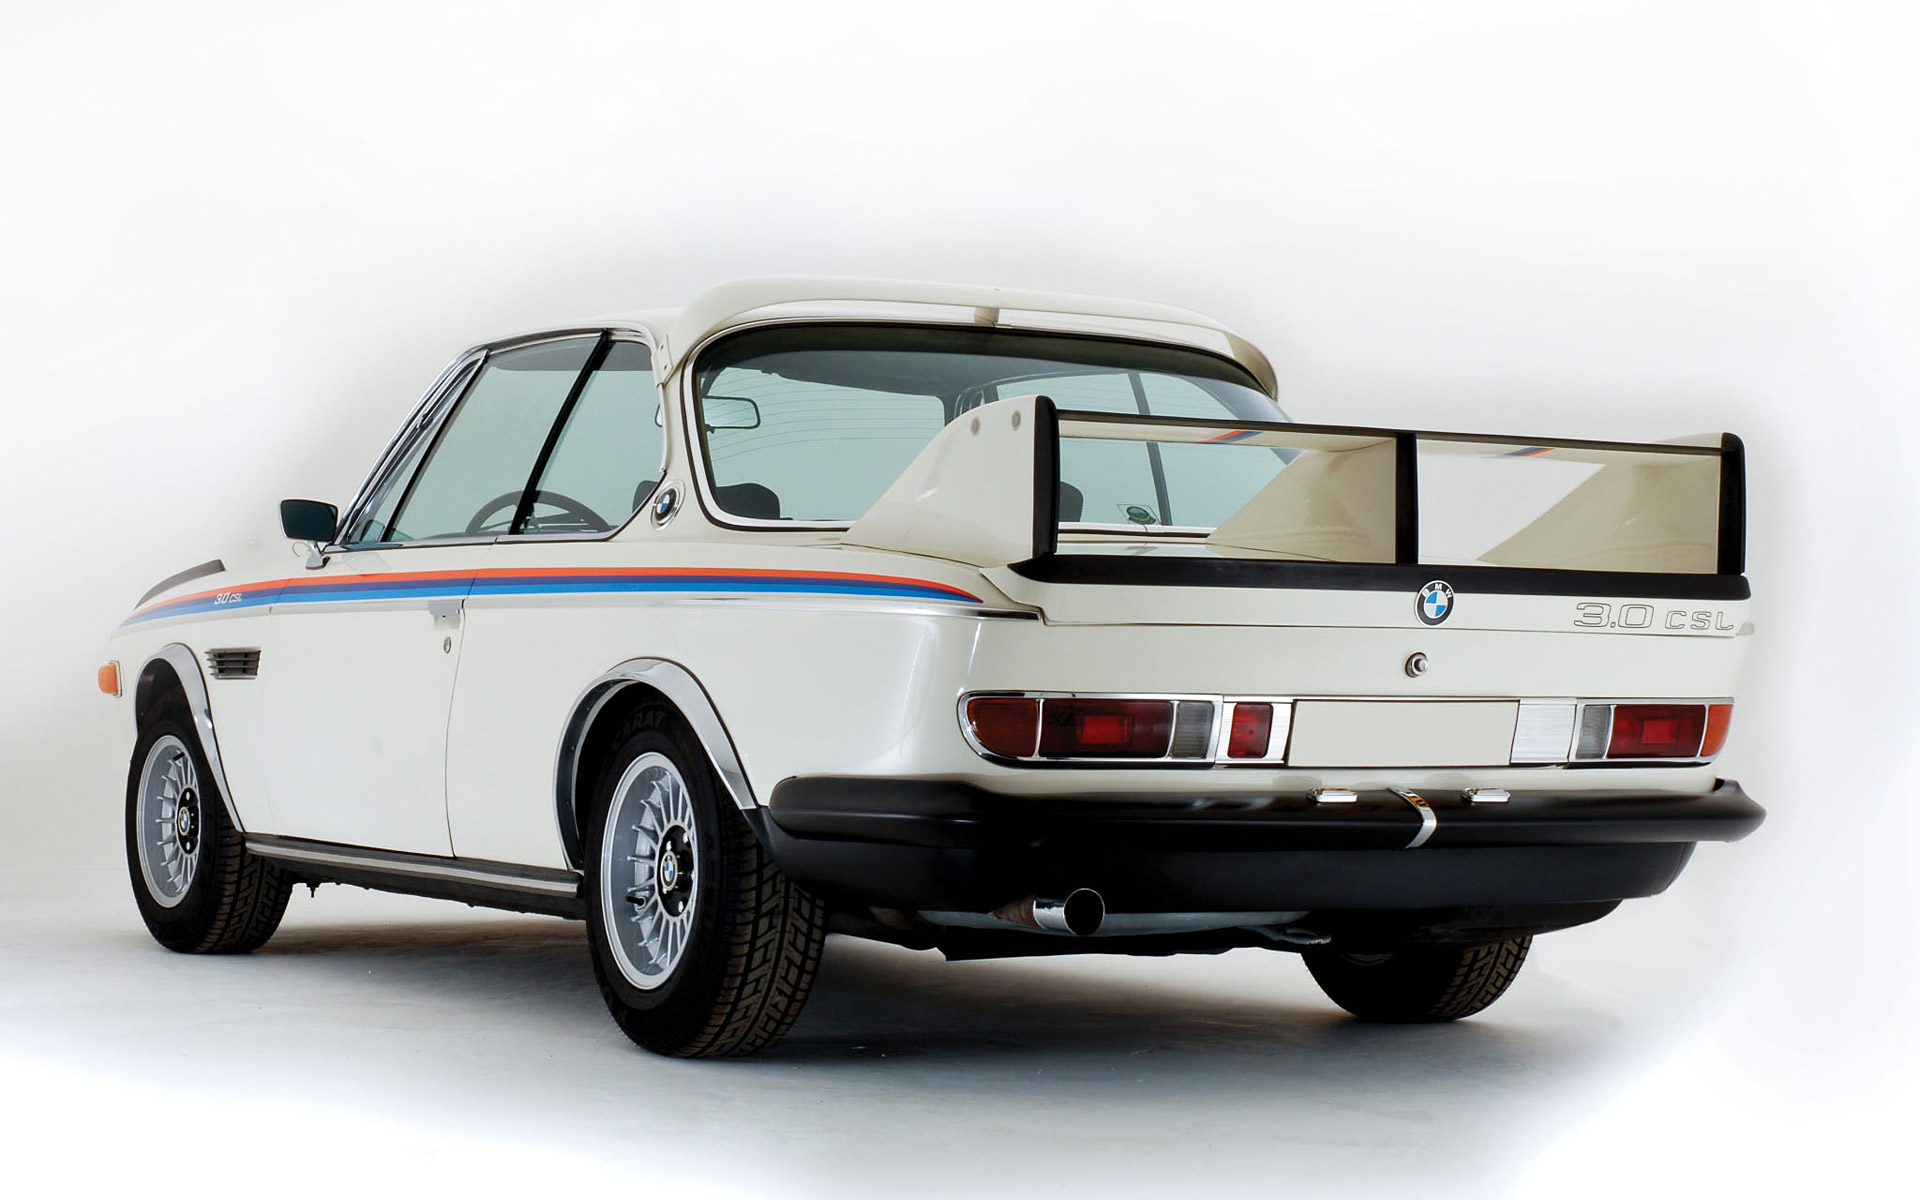  1973 BMW 3.0 CSL E9 Wallpaper.